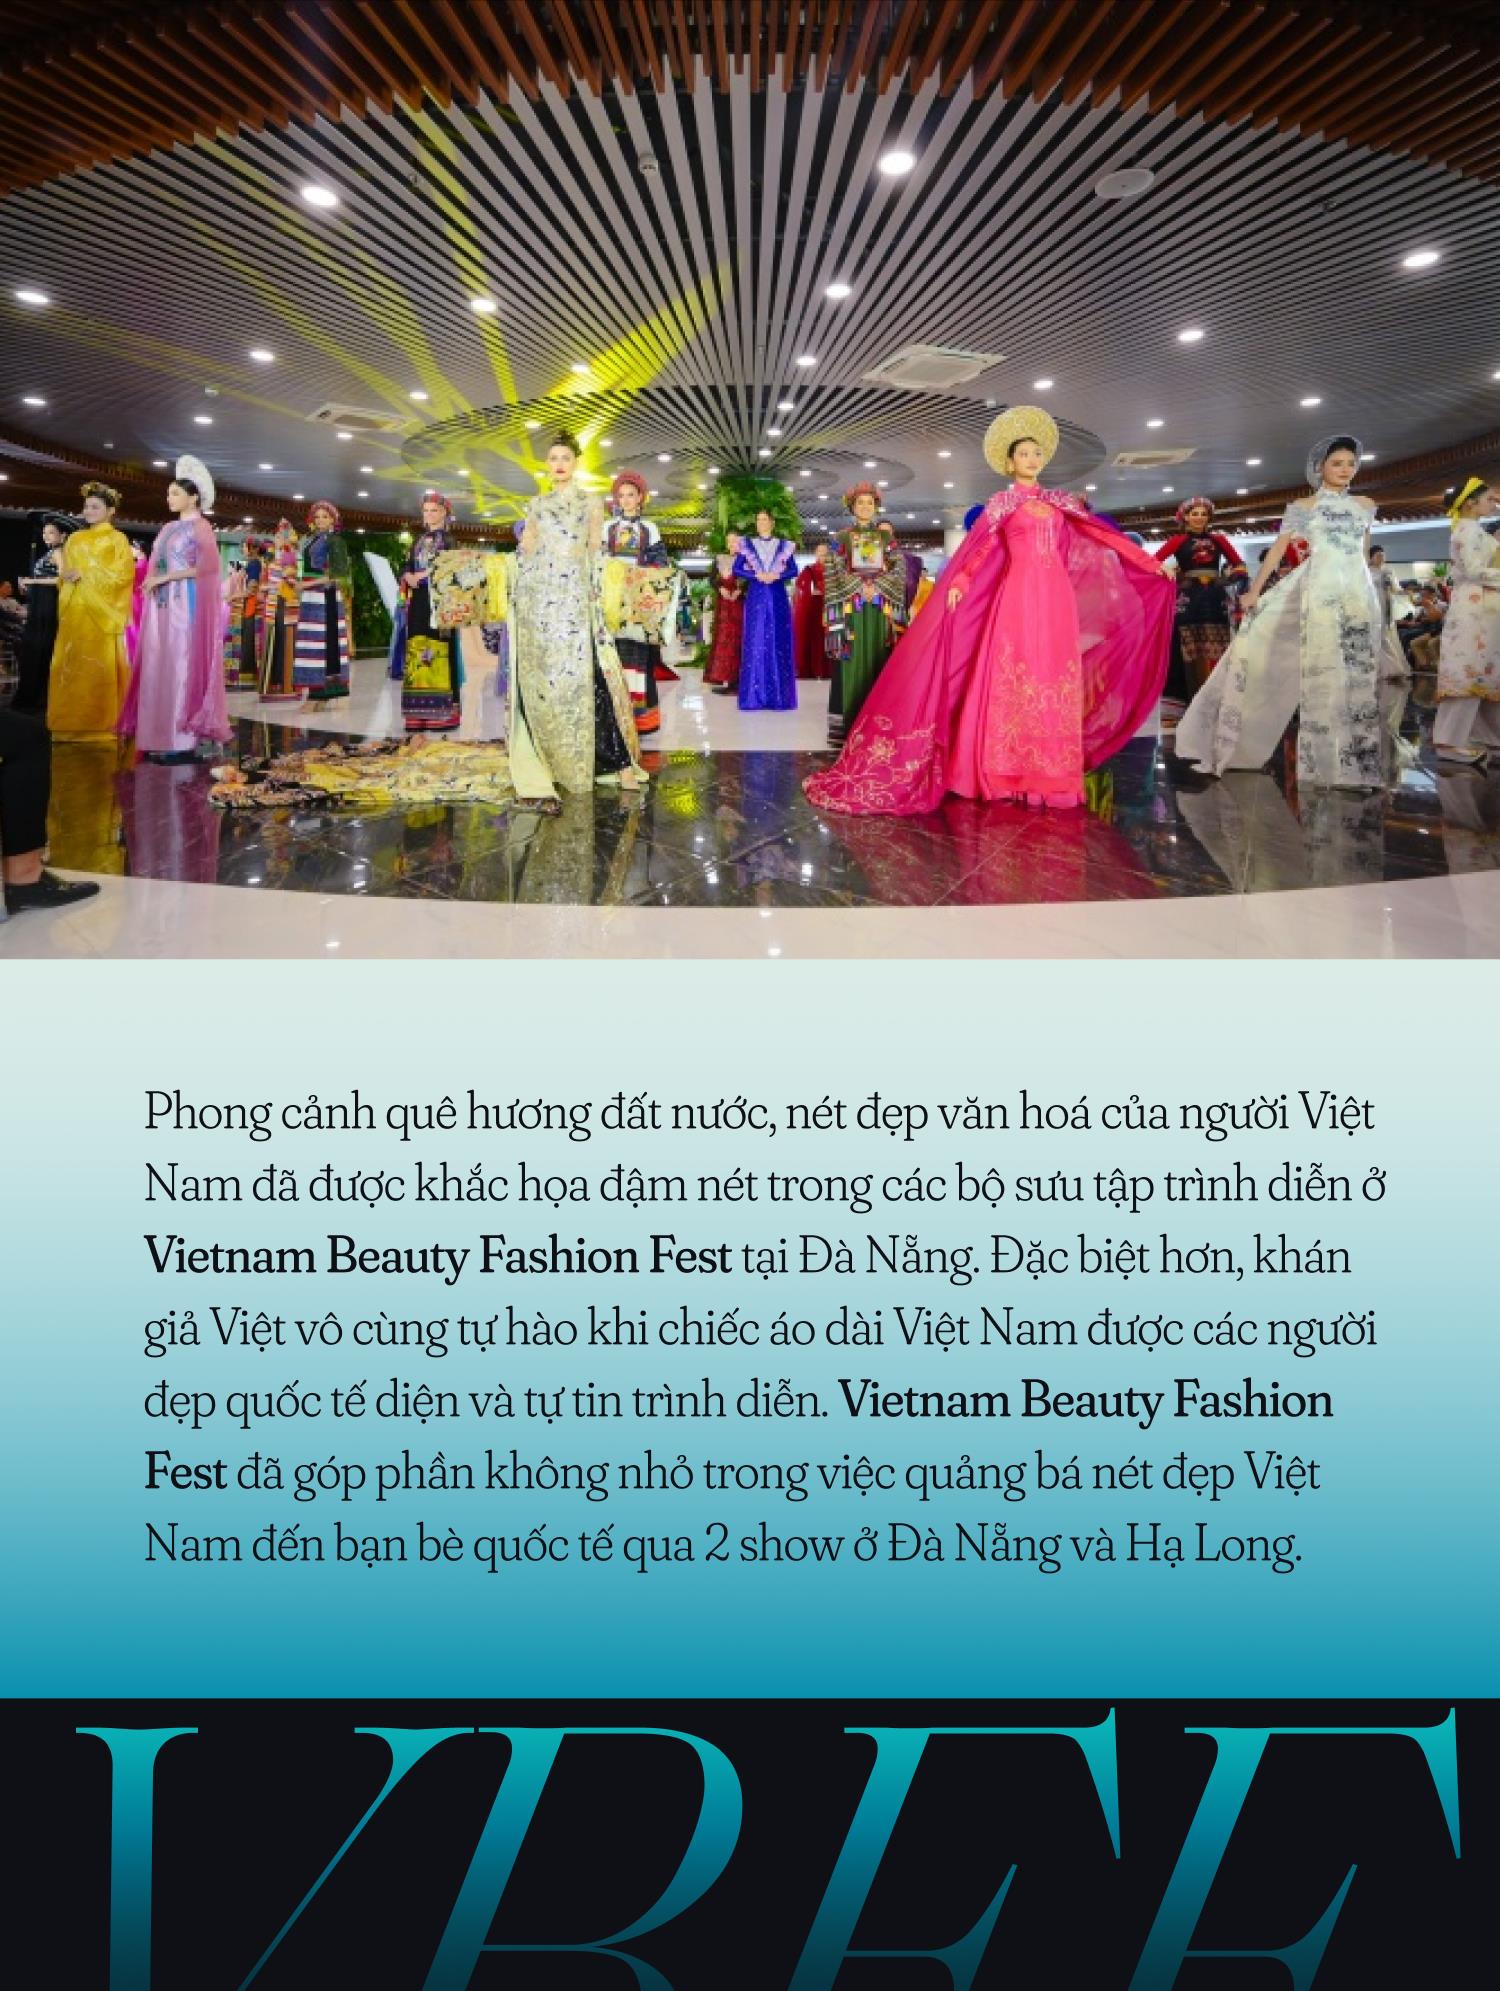 2 show Vietnam Beauty Fashion Fest của Miss Grand International 2023: Top 70 thí sinh tỏa sáng, 1 chi tiết hé lộ đầu tư quy mô - Ảnh 7.